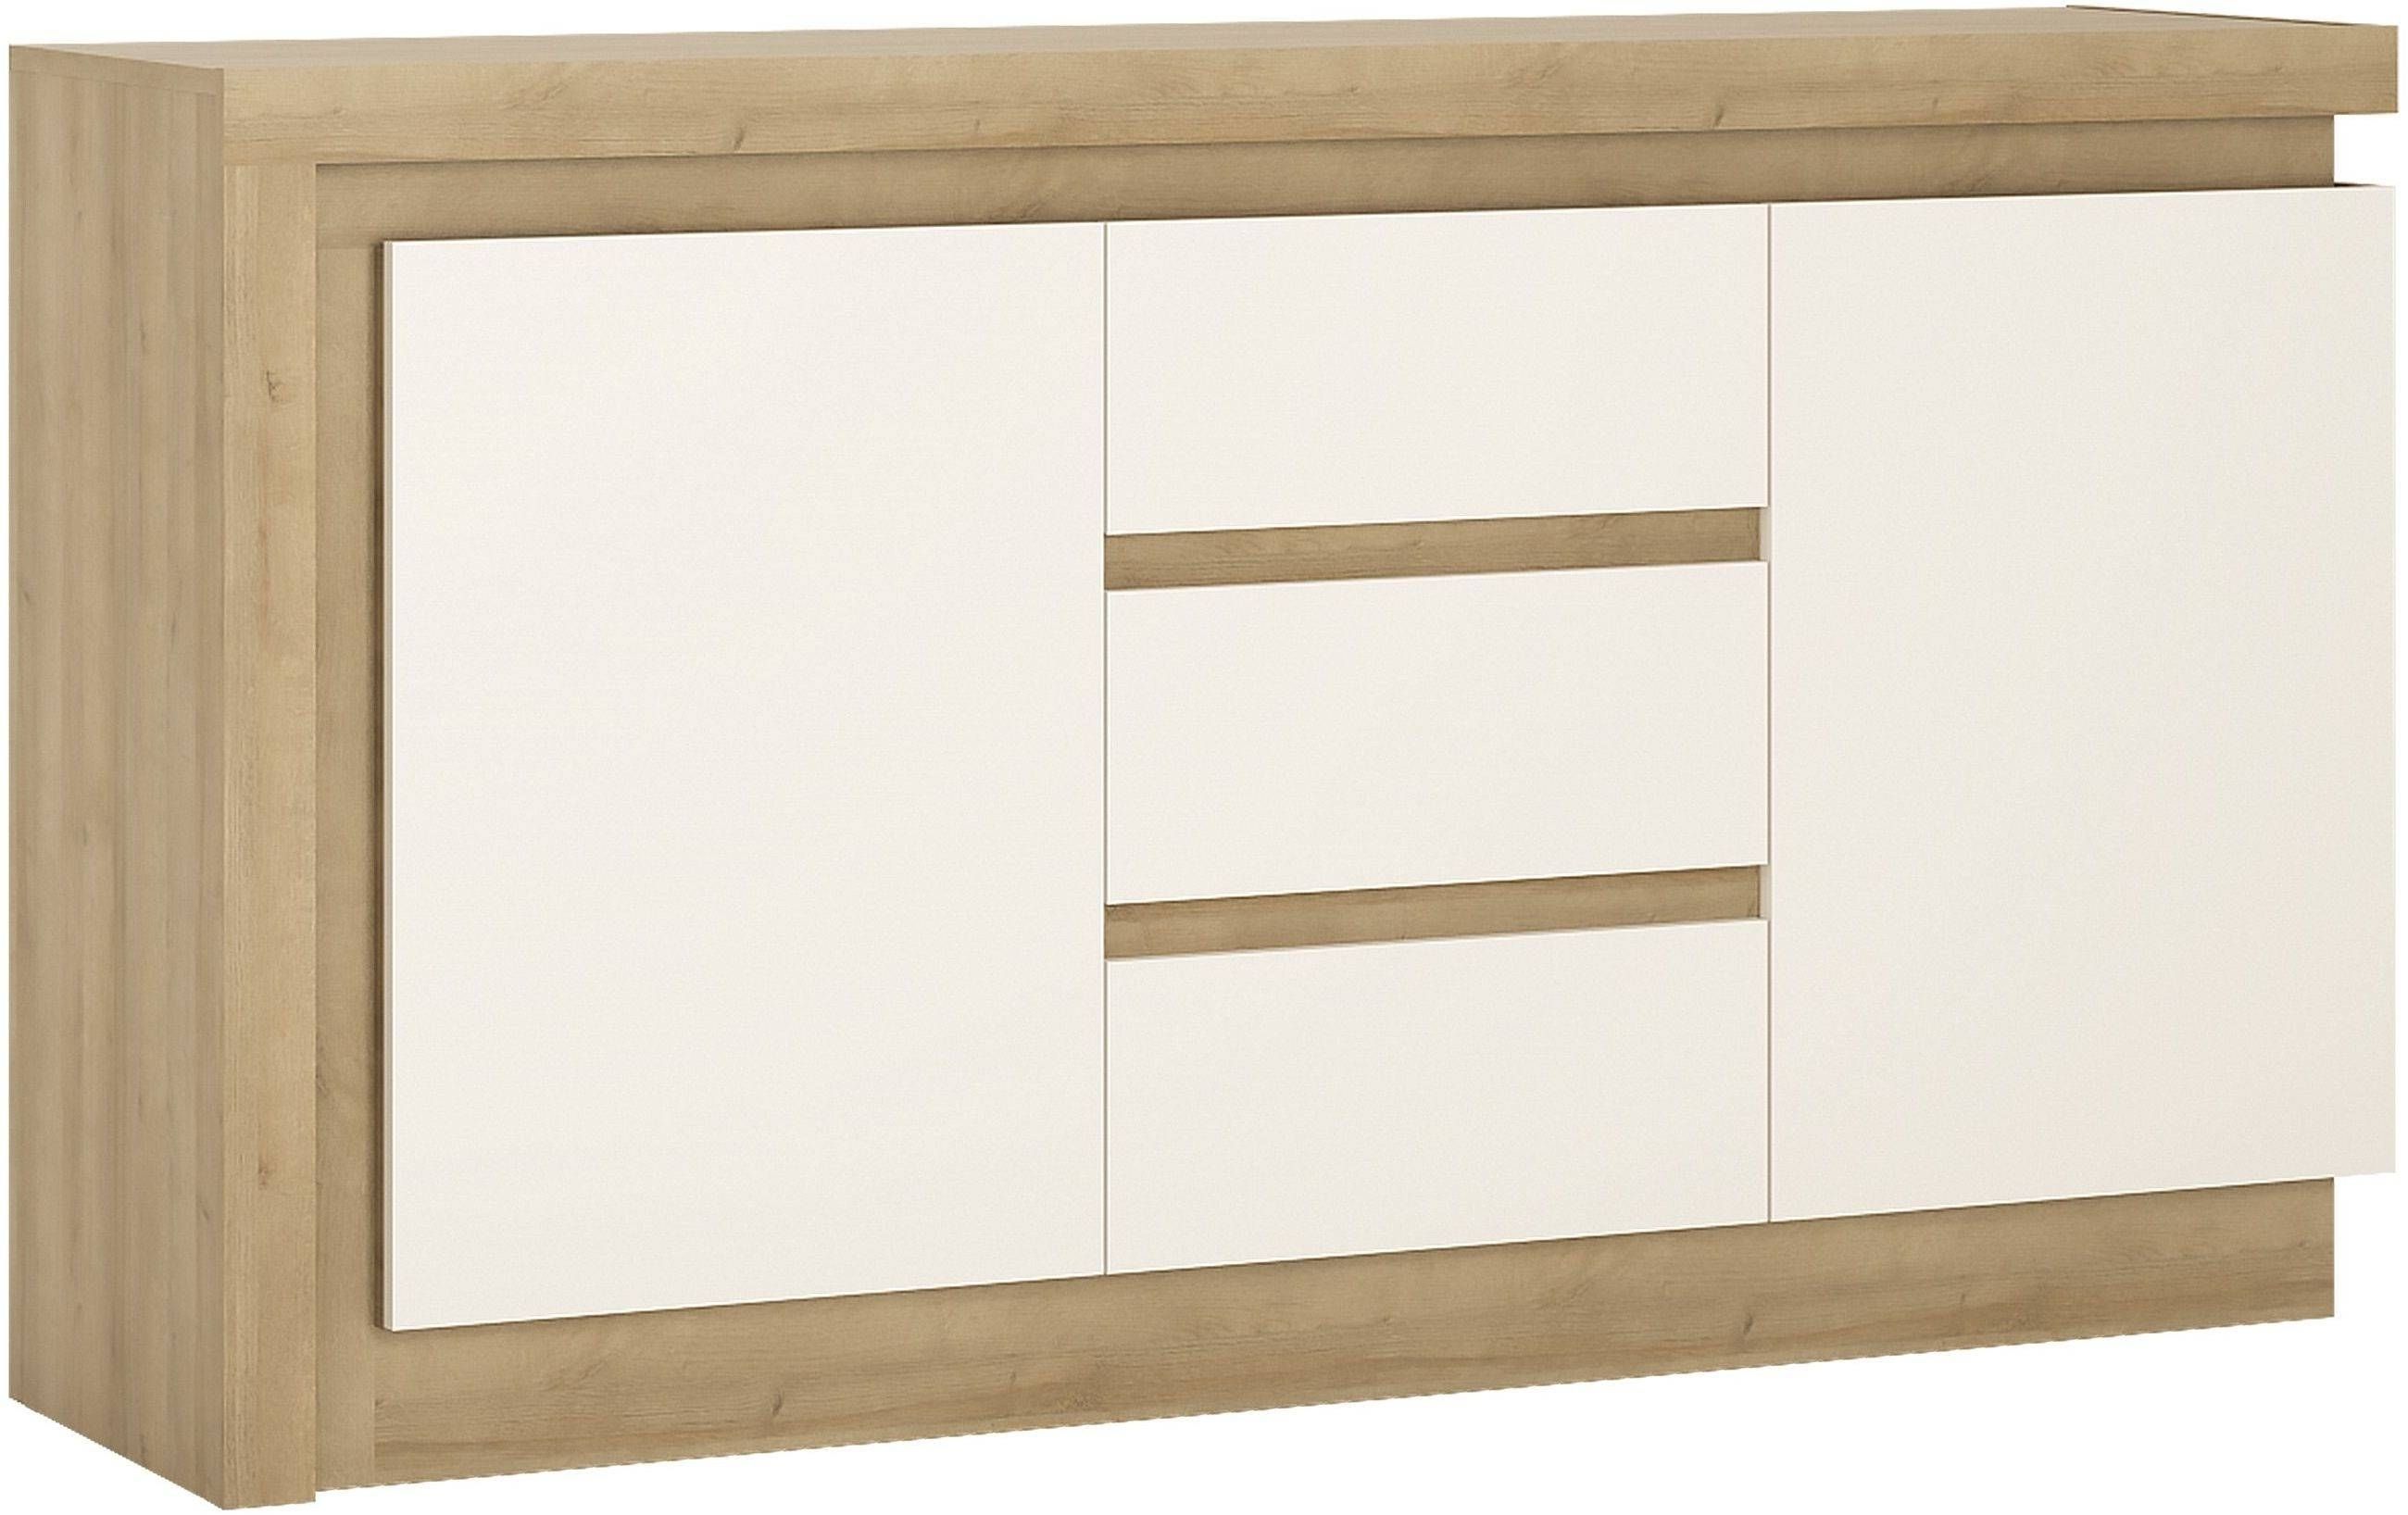 Buy Lyon Riviera Oak And White High Gloss Sideboard – 2 Door 3 With Regard To High Gloss Sideboard (View 4 of 20)